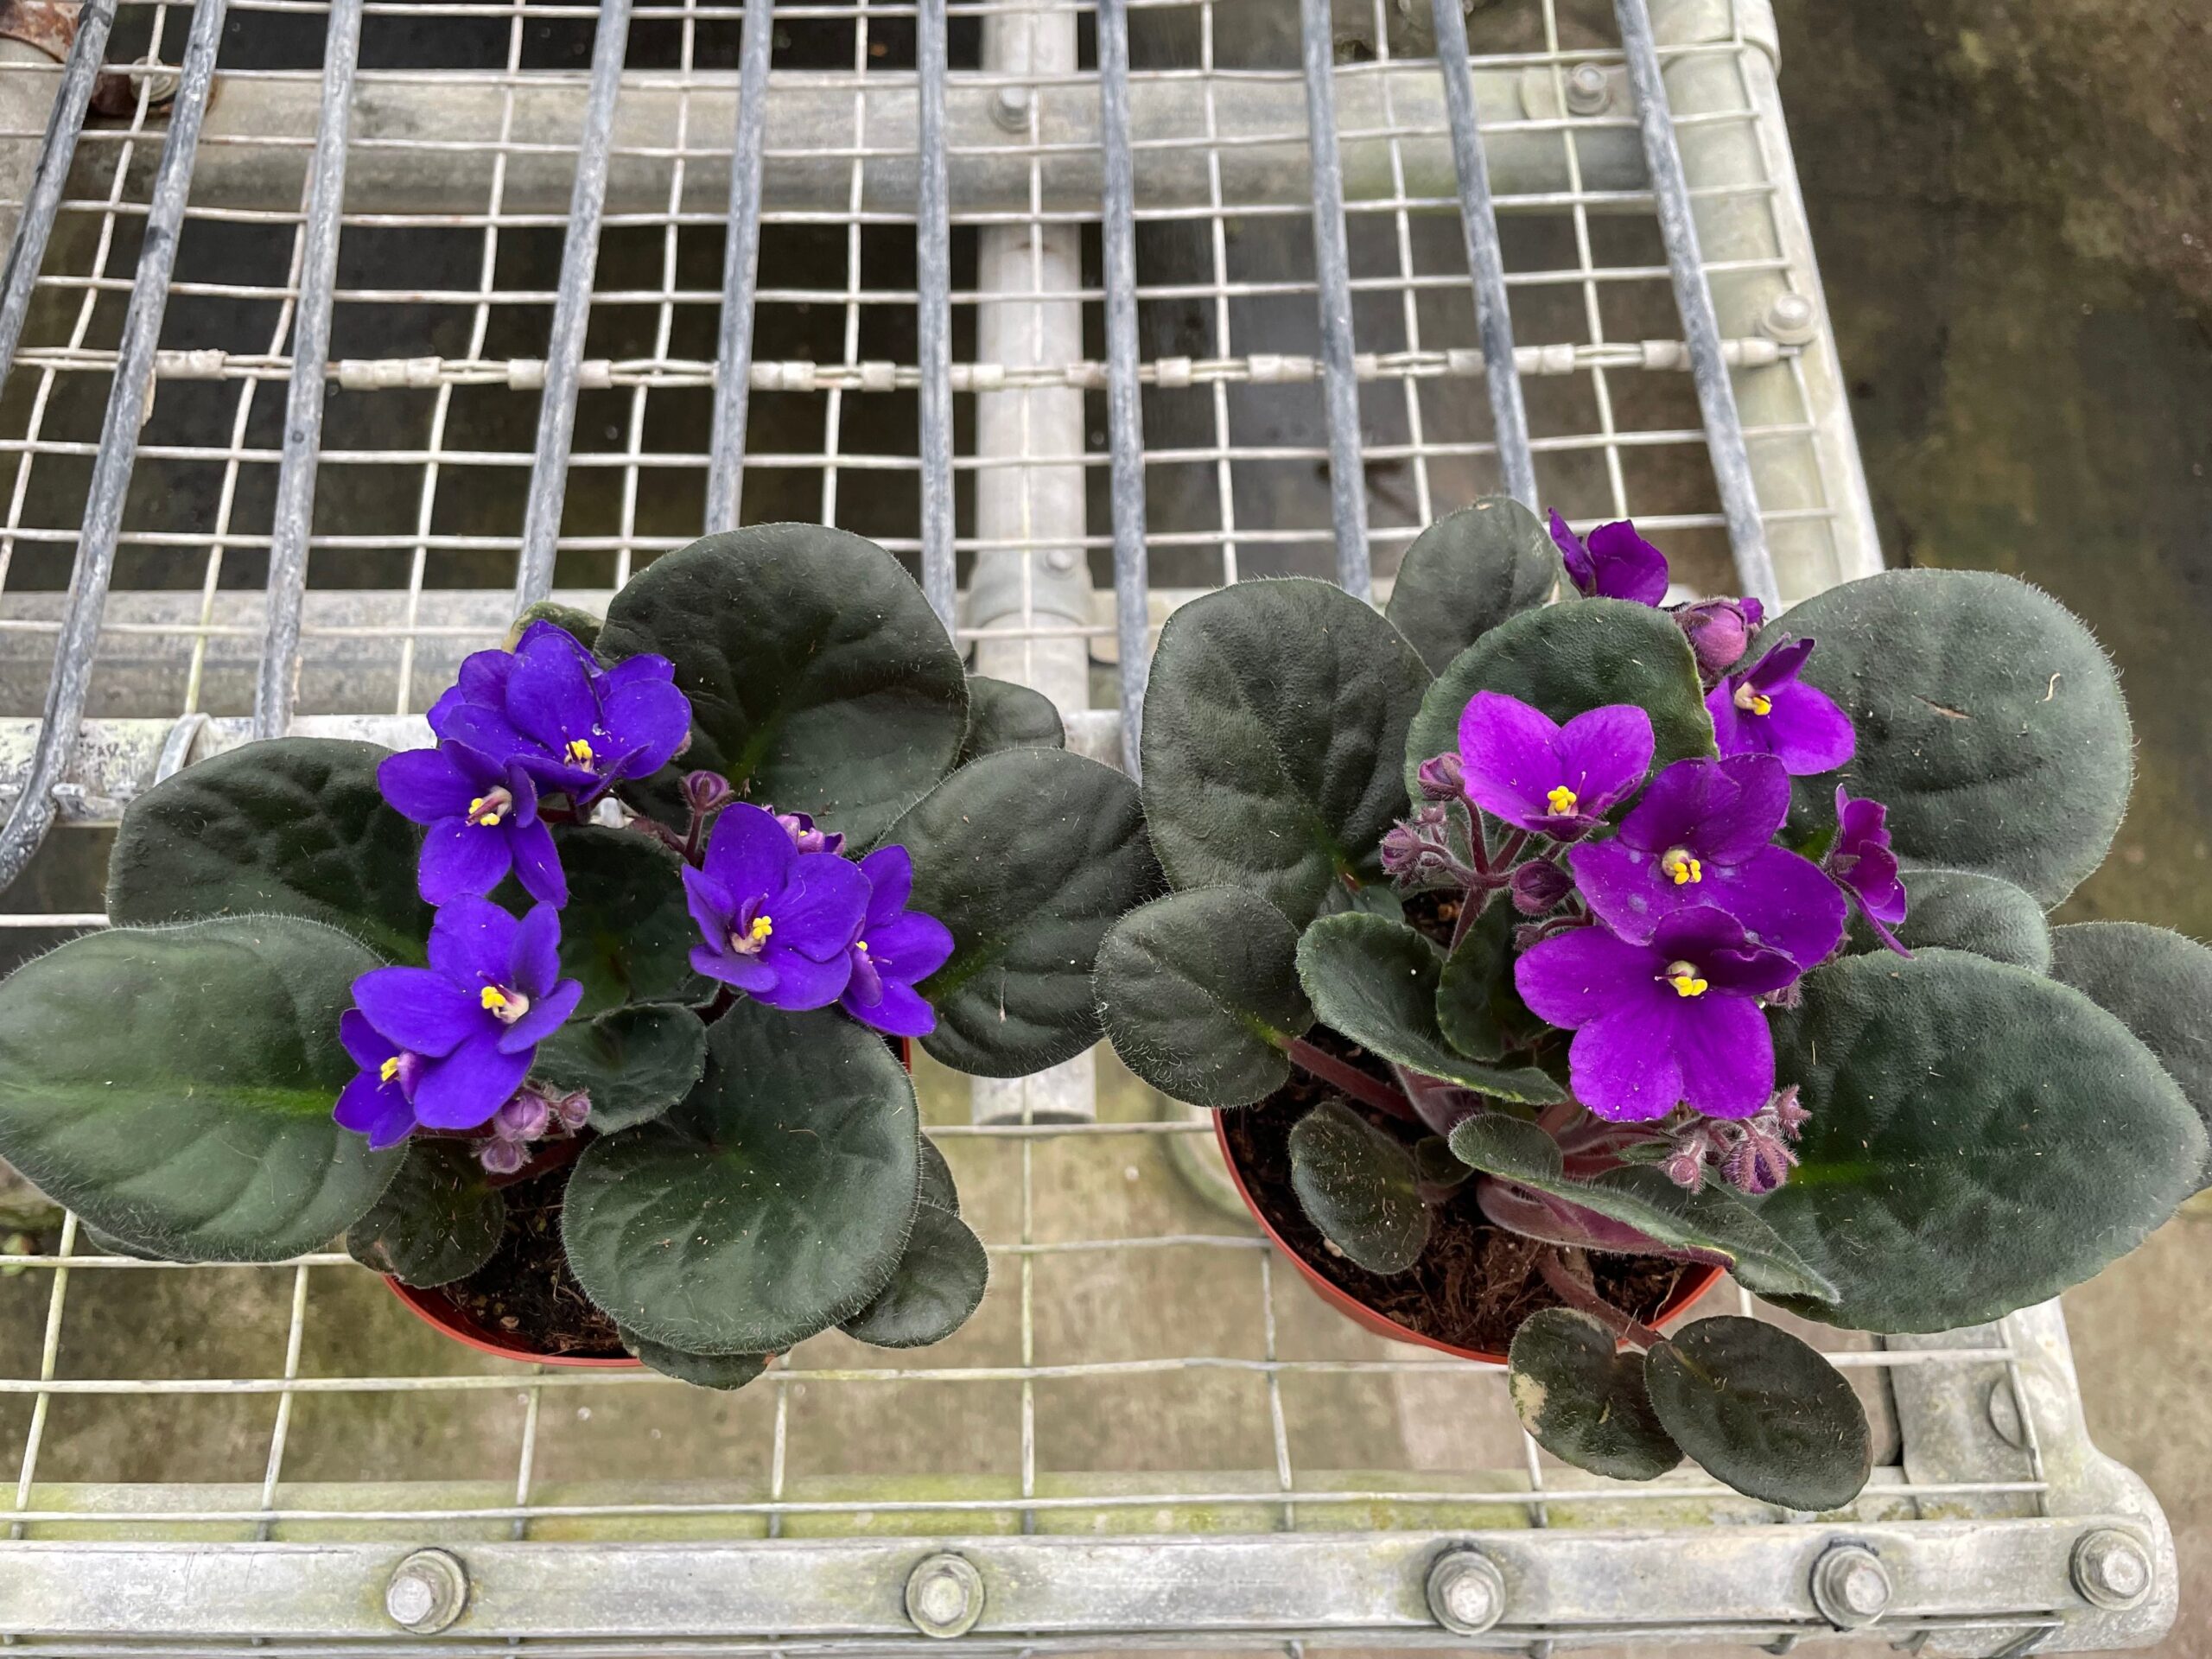 Two purple flowers in pots on a metal rack.